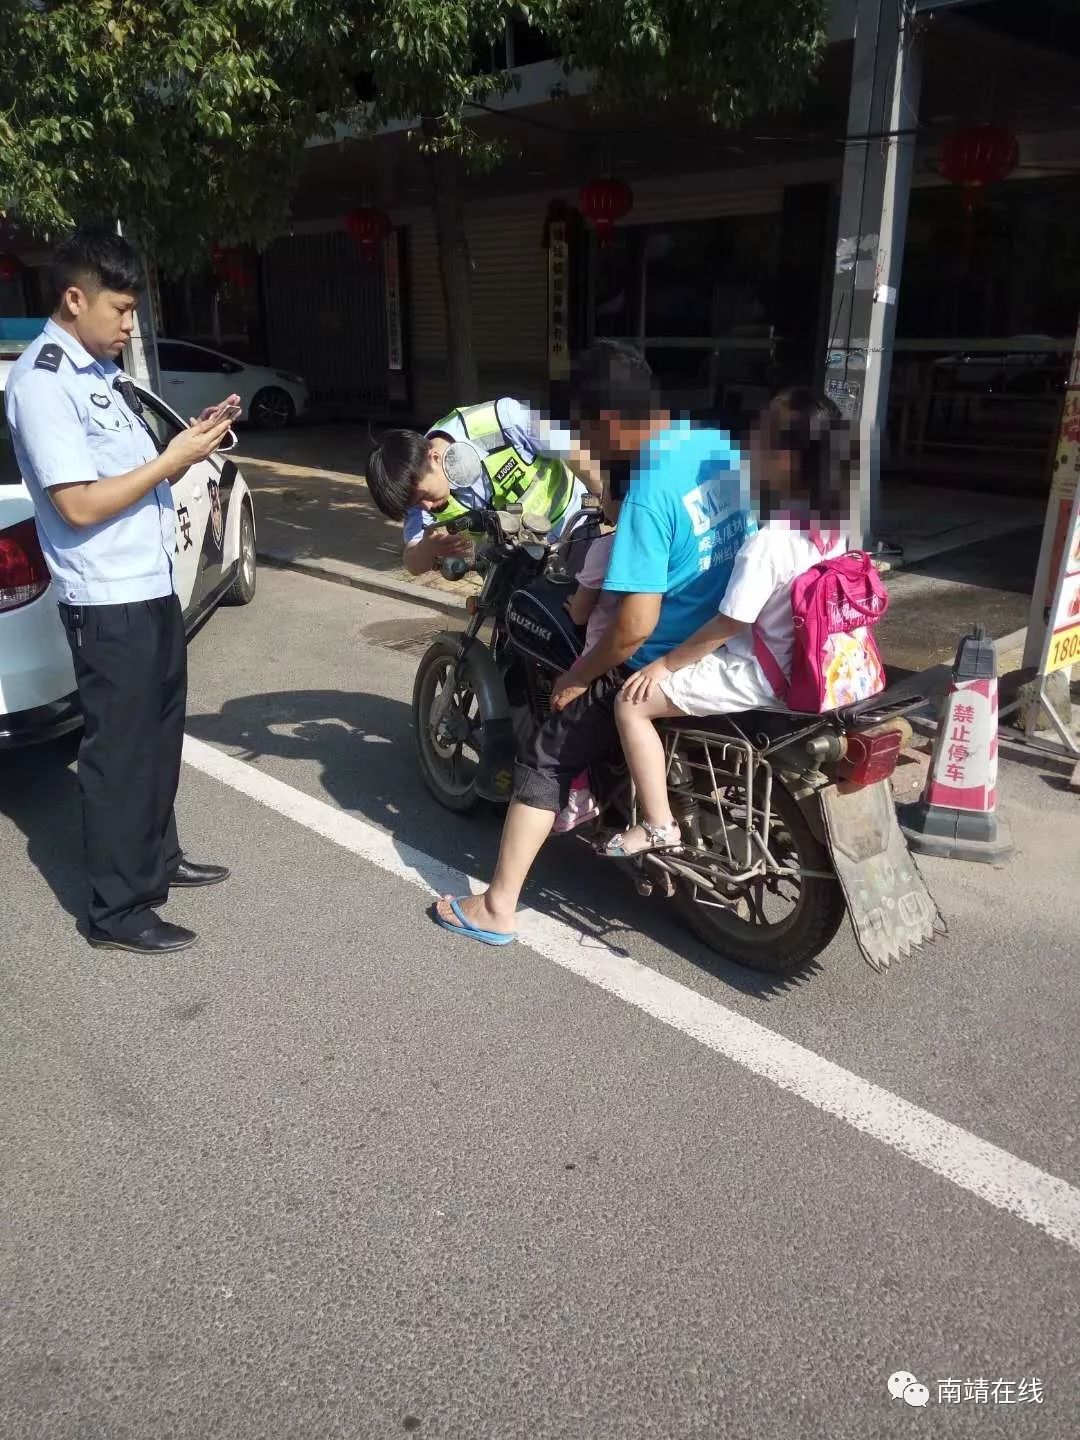 南靖:摩托车载人超员,民警纠违亲护送